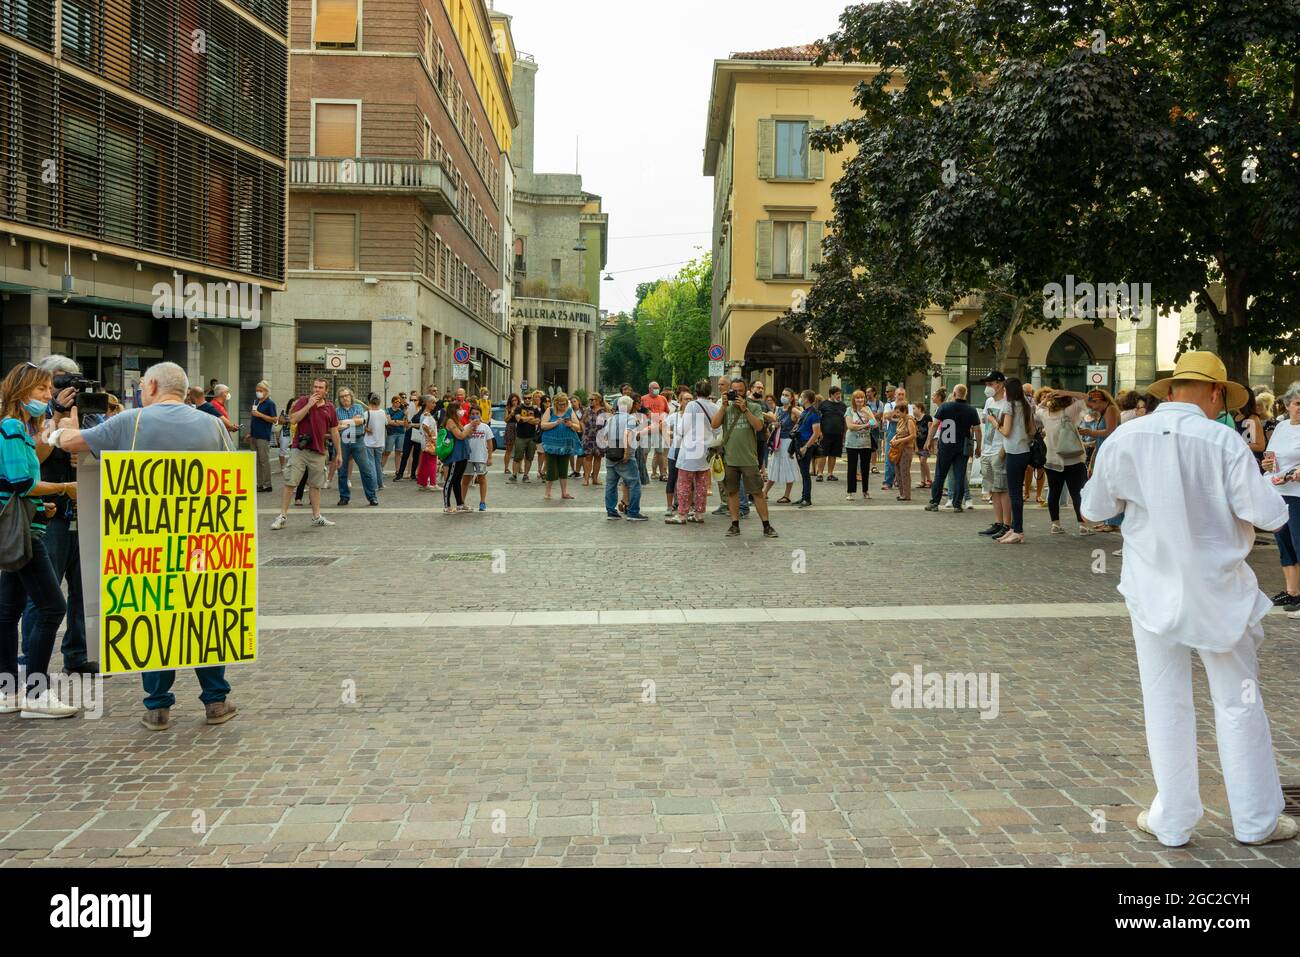 CREMON, ITALIE - 24 juillet 2021 : une foule de personnes protestant contre la vaccination Covid-19 à Cremon, Italie Banque D'Images